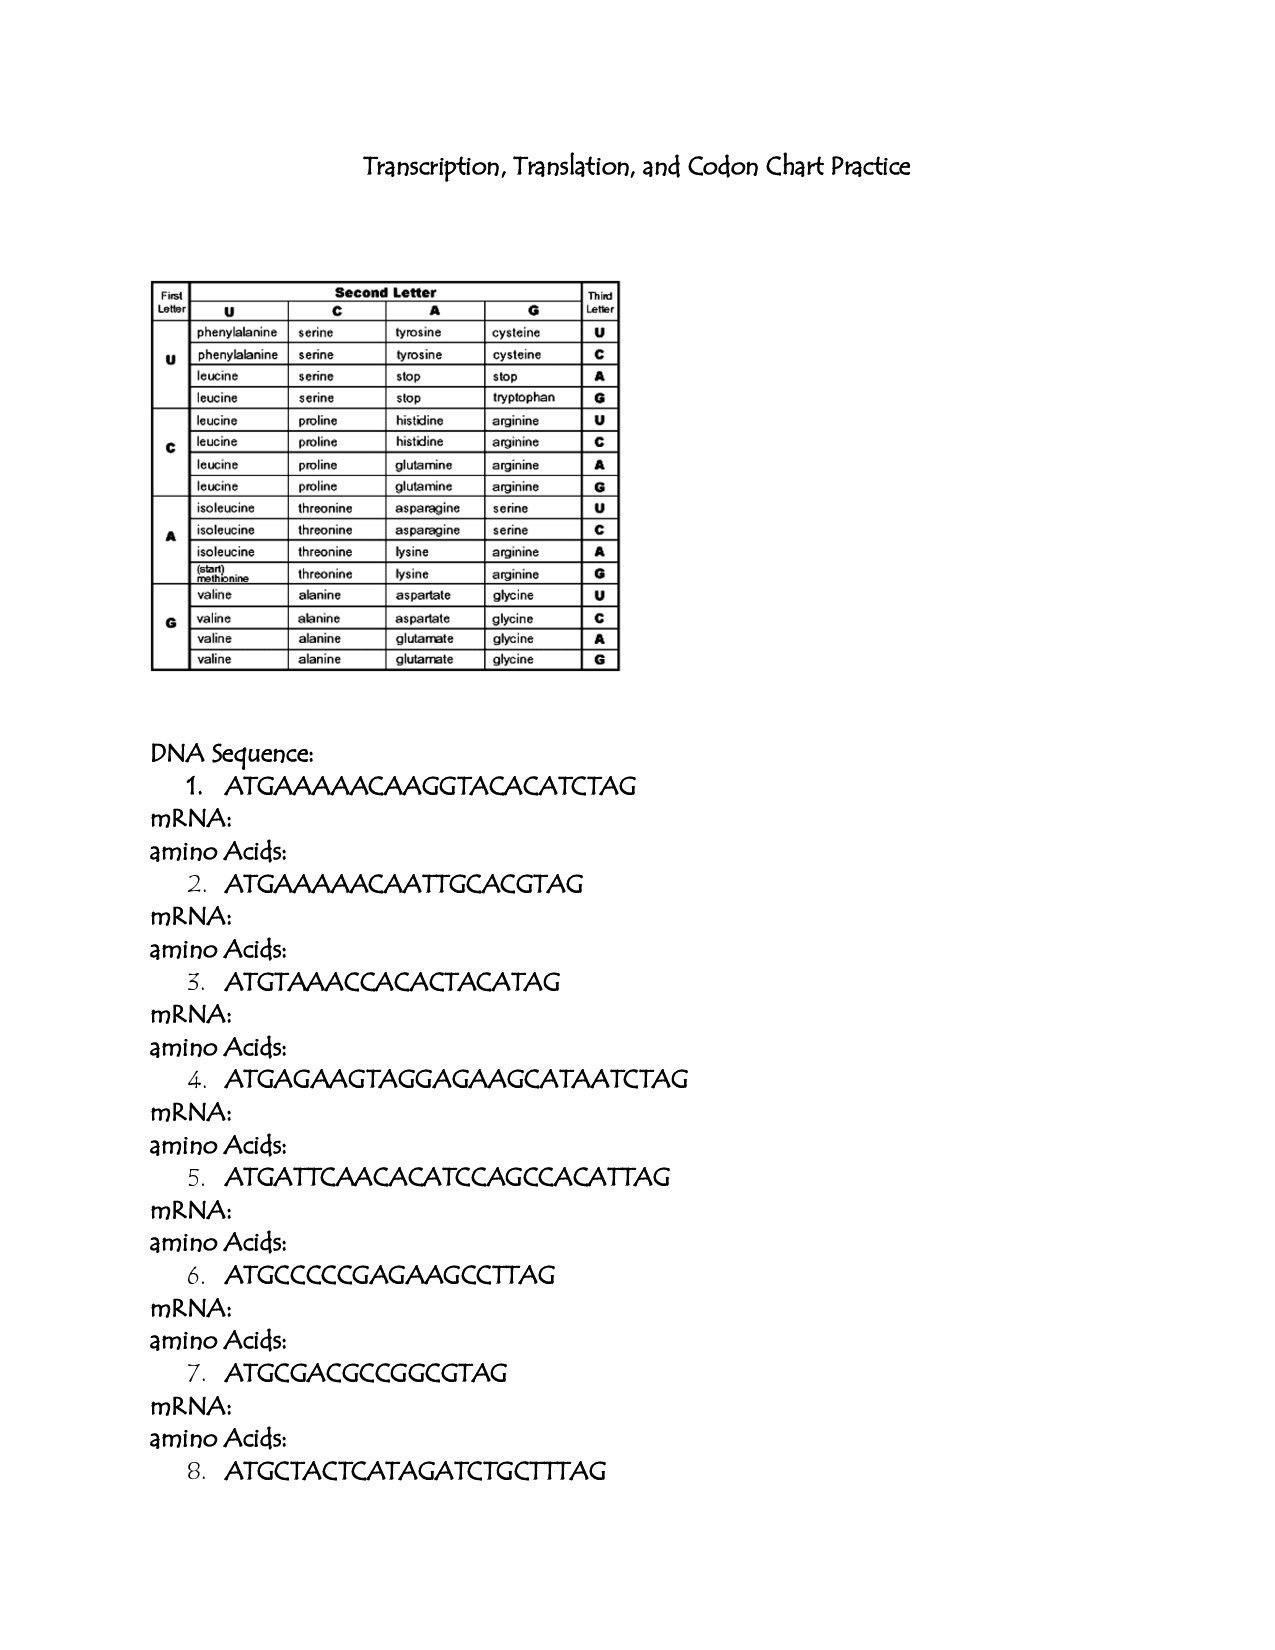 DNA Transcription and Translation Worksheet Image